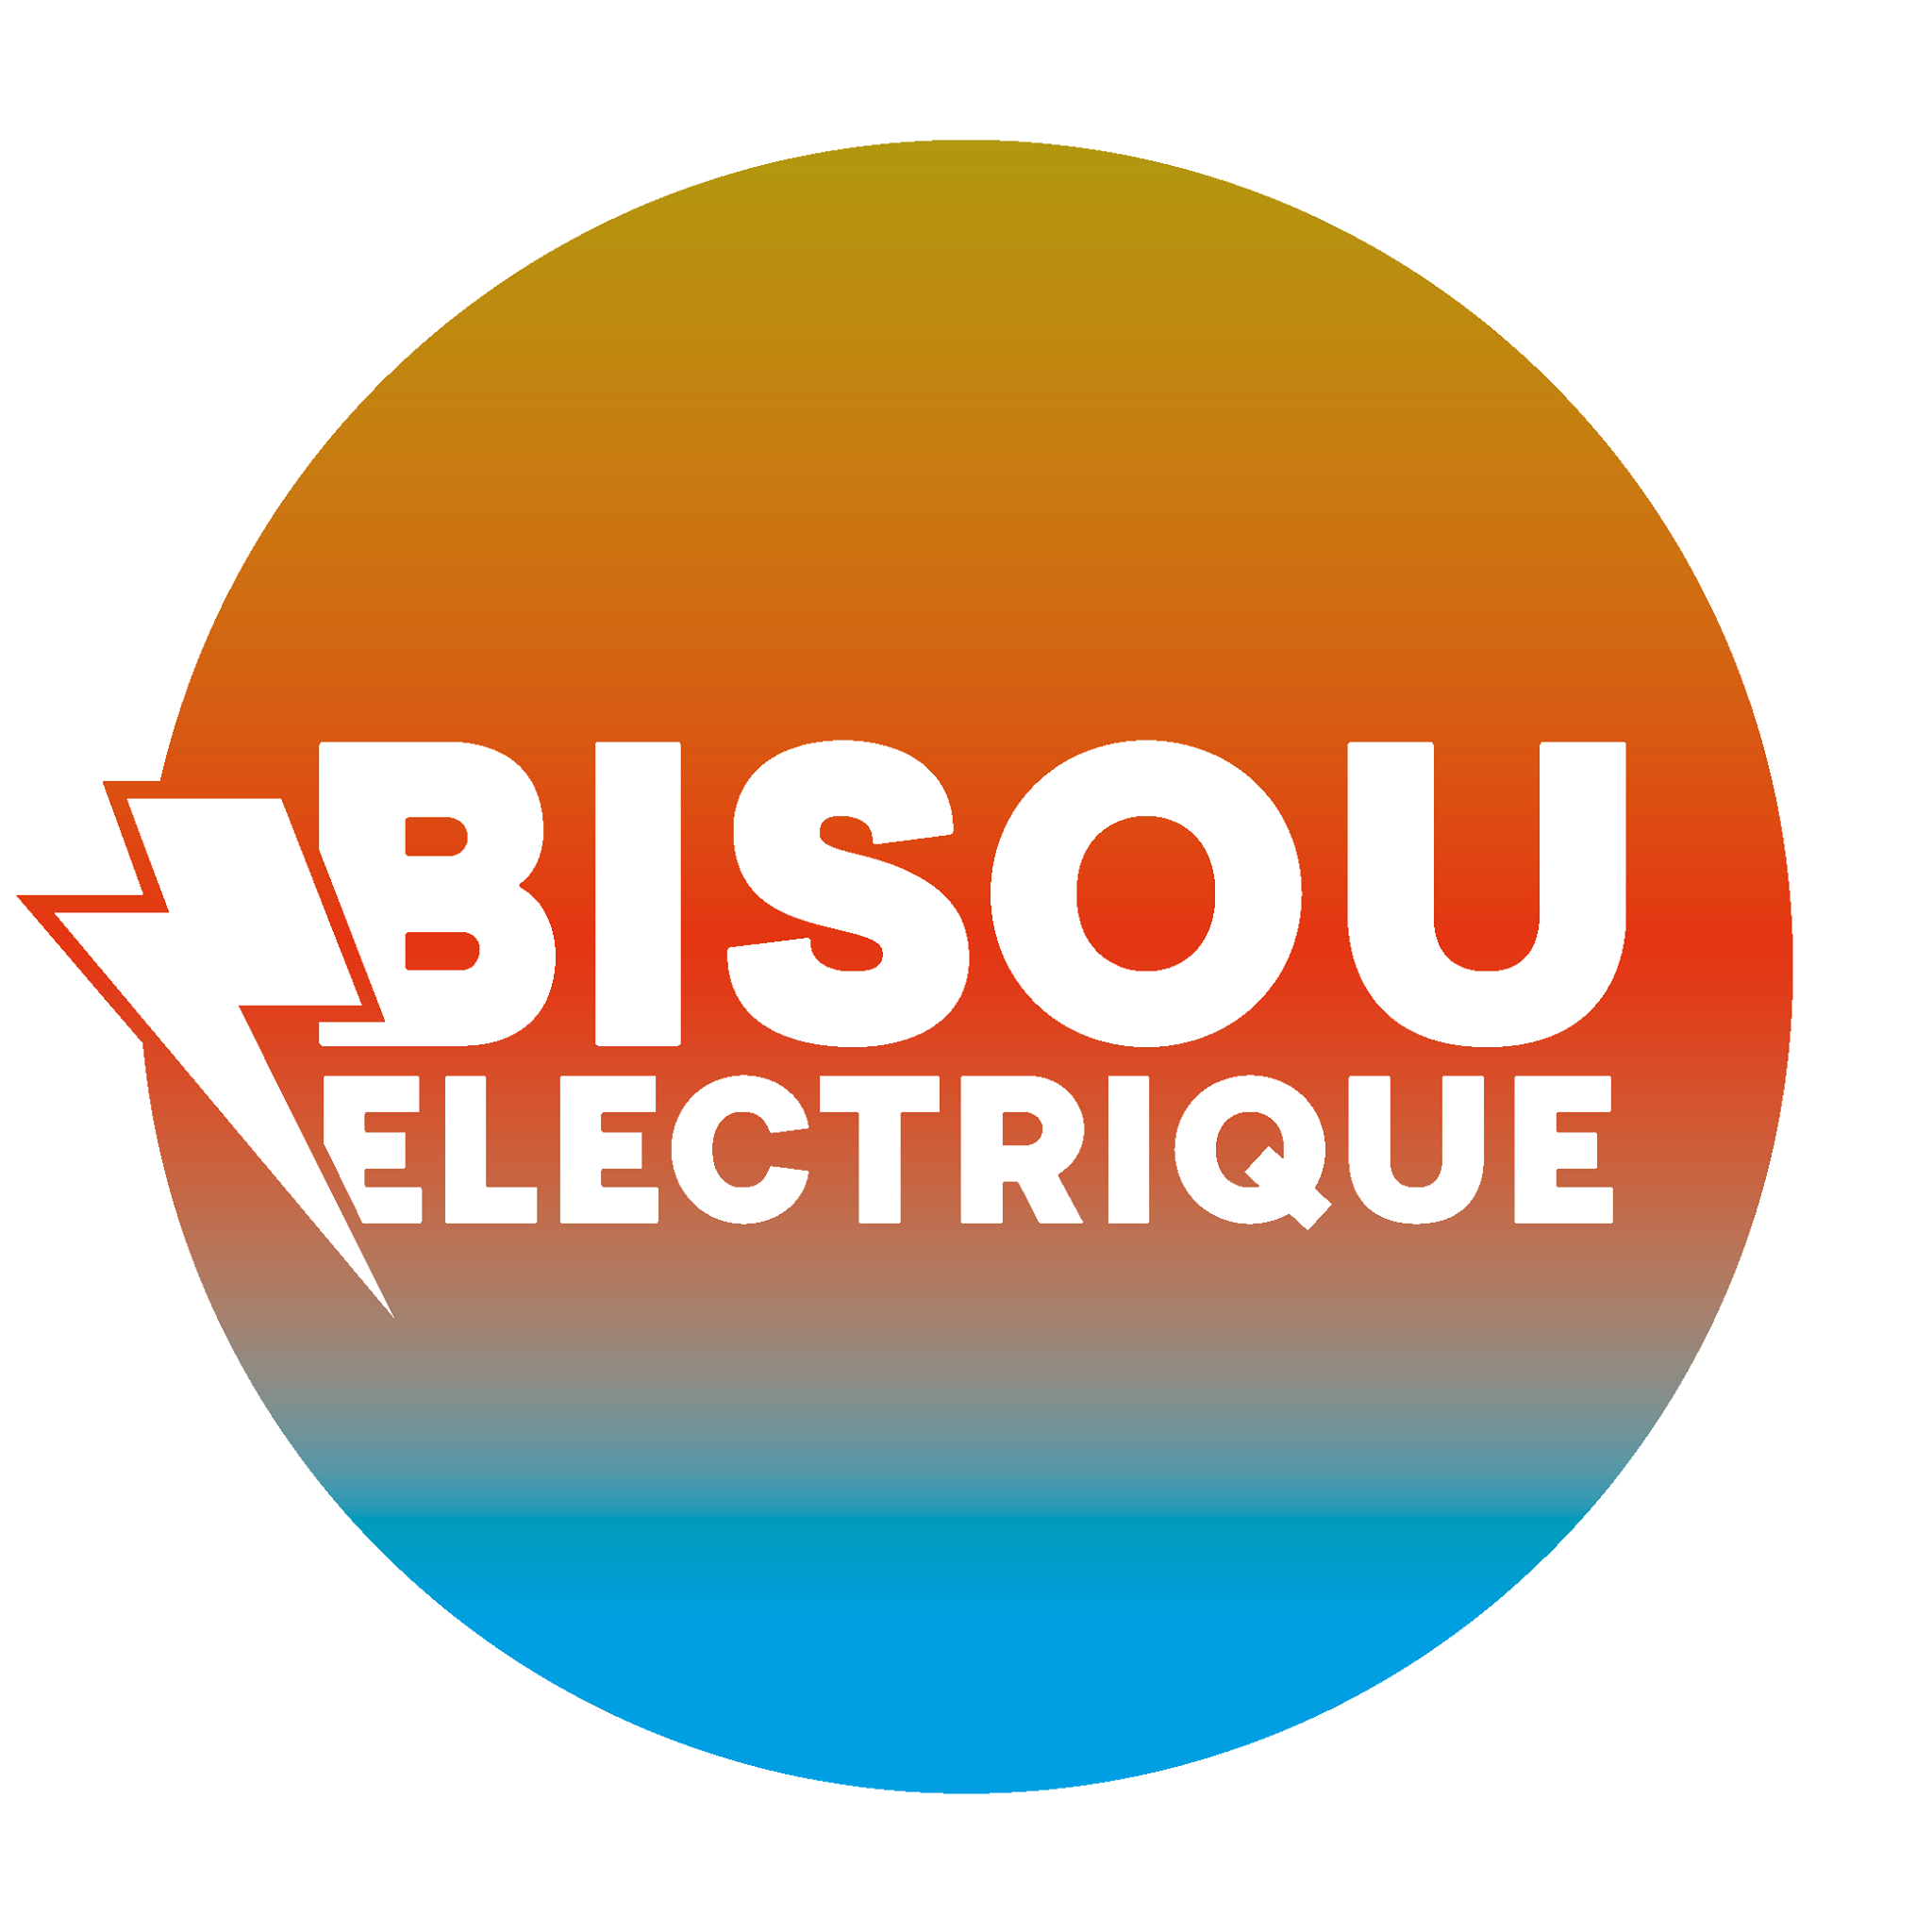 Bisou Electrique